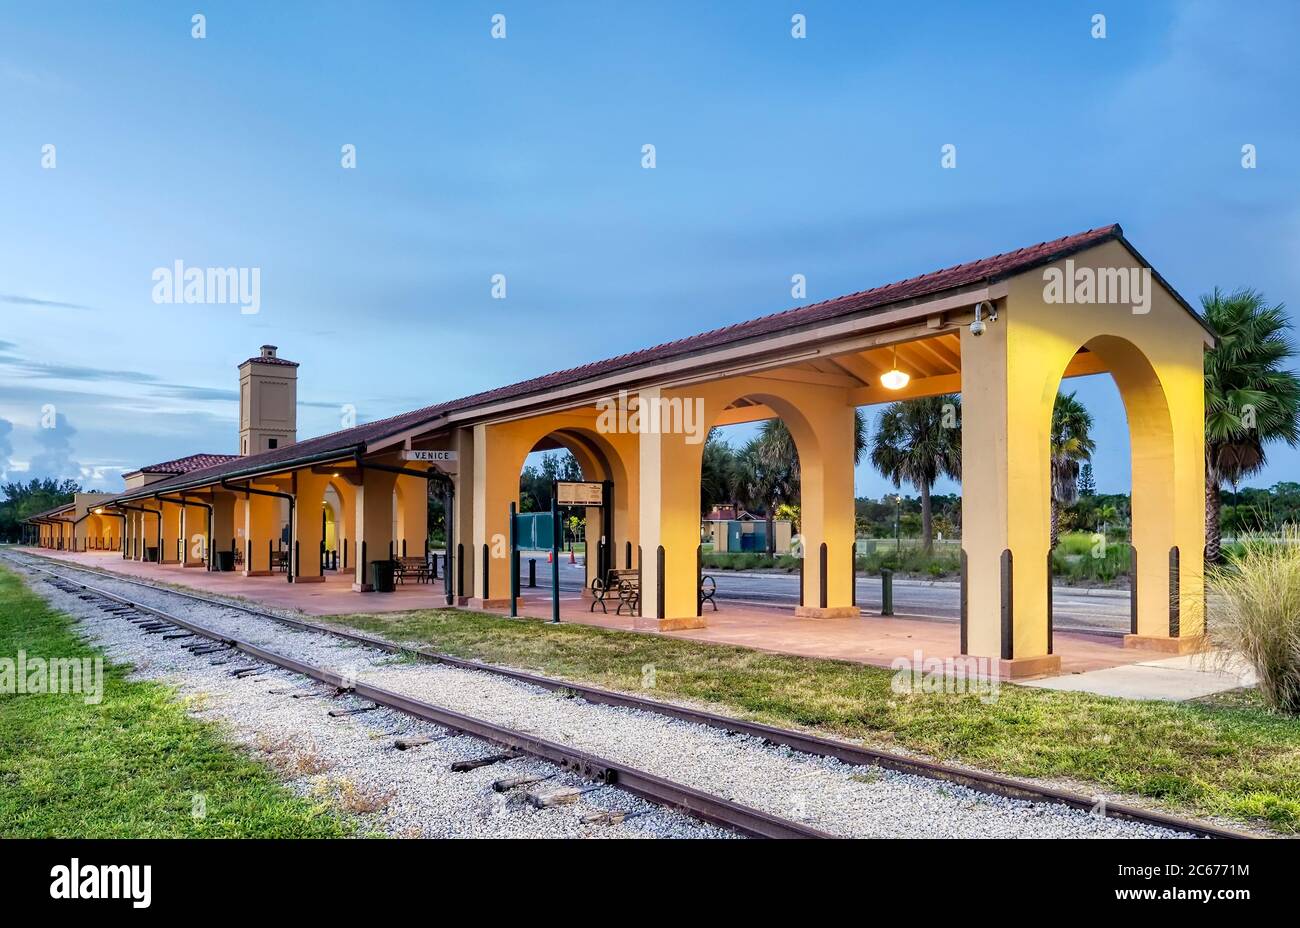 Le dépôt historique de train de Venise de style méditerranéen revival construit en 1927 par le Seaboard Air Line Railway à Venise en Floride aux États-Unis Banque D'Images